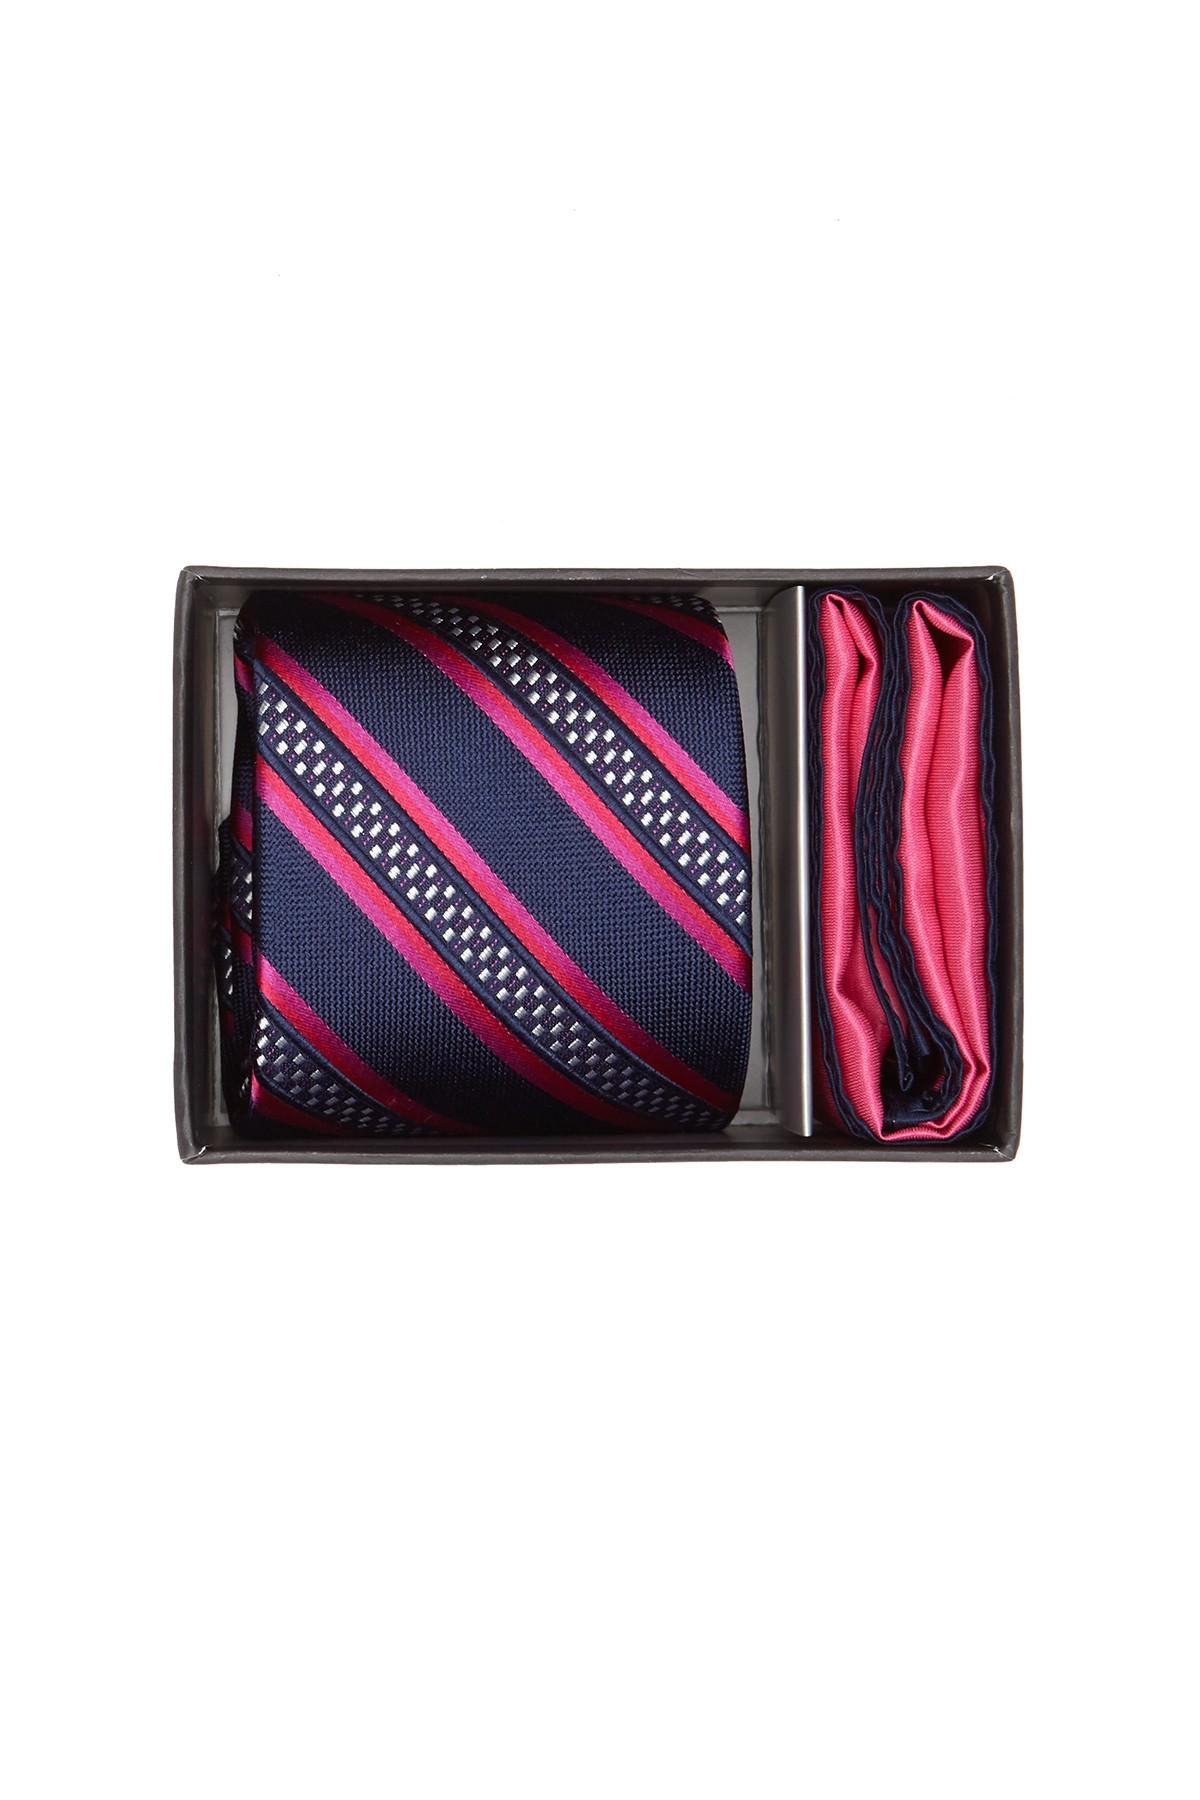 Ted Baker Track Stripe Silk Tie & Pocket Square Set in Pink for Men - Lyst